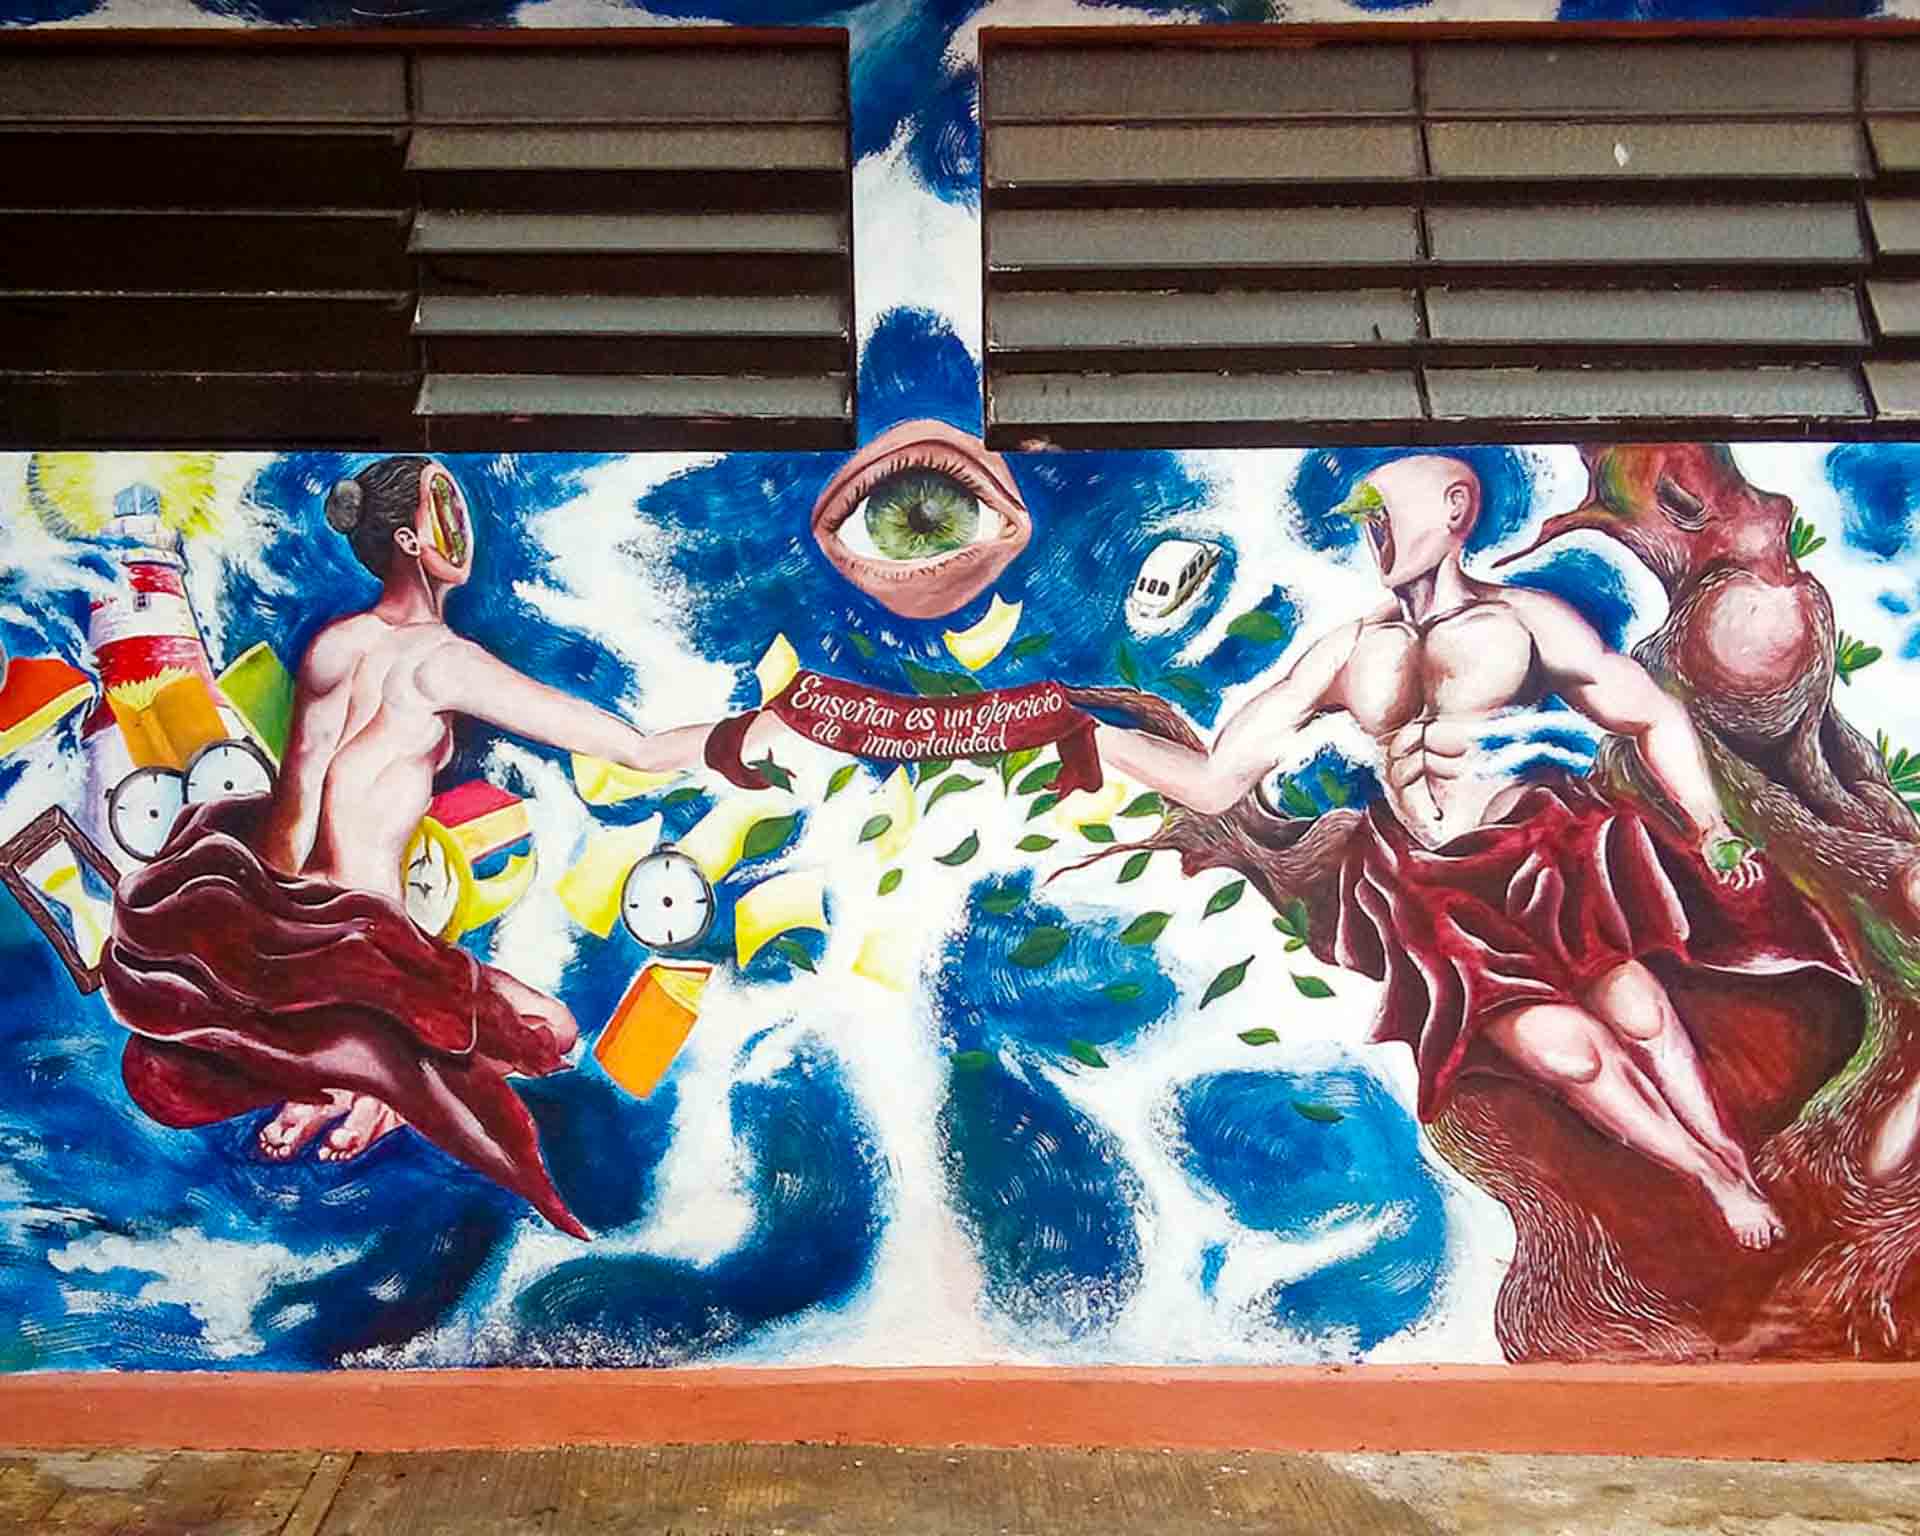 Mural Universidad de Valladolid, Yucatán